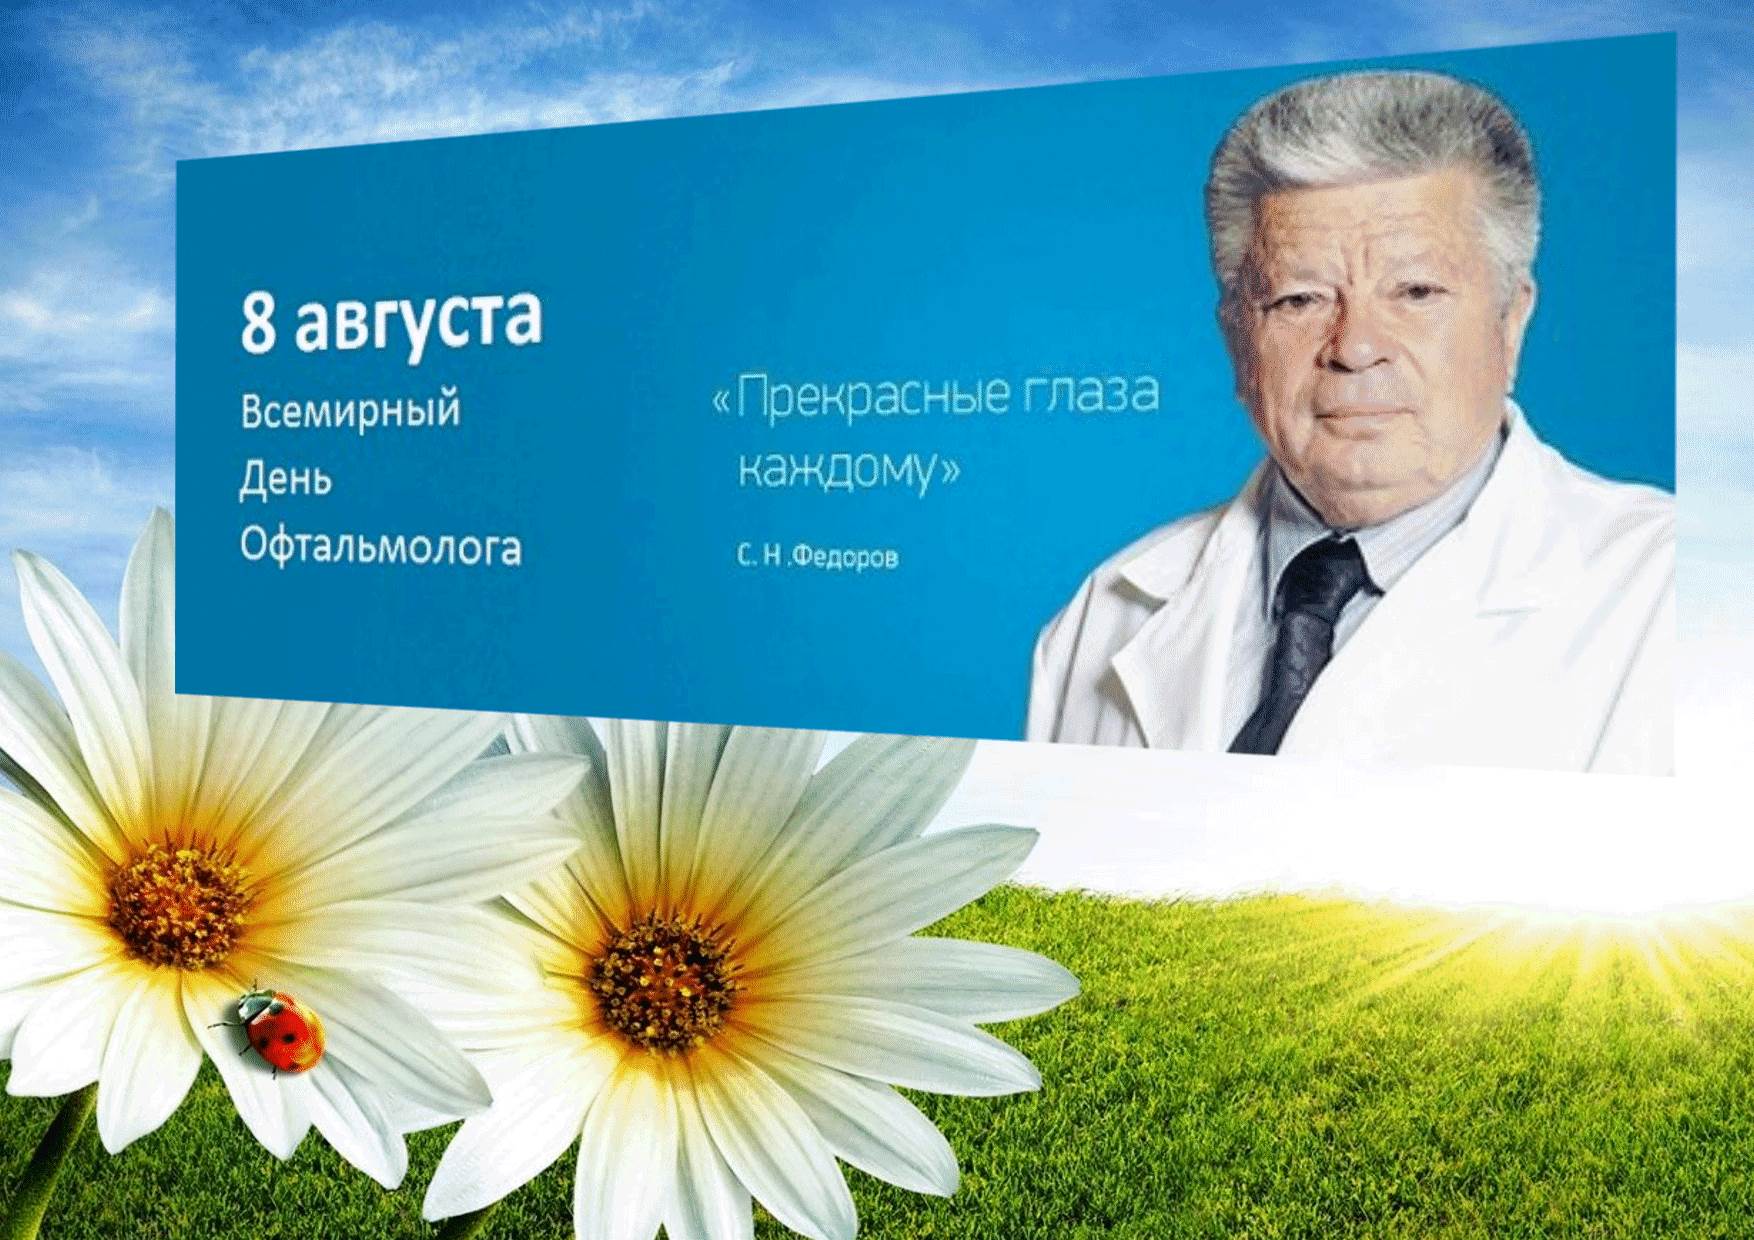 День Офтальмолога В России Поздравления